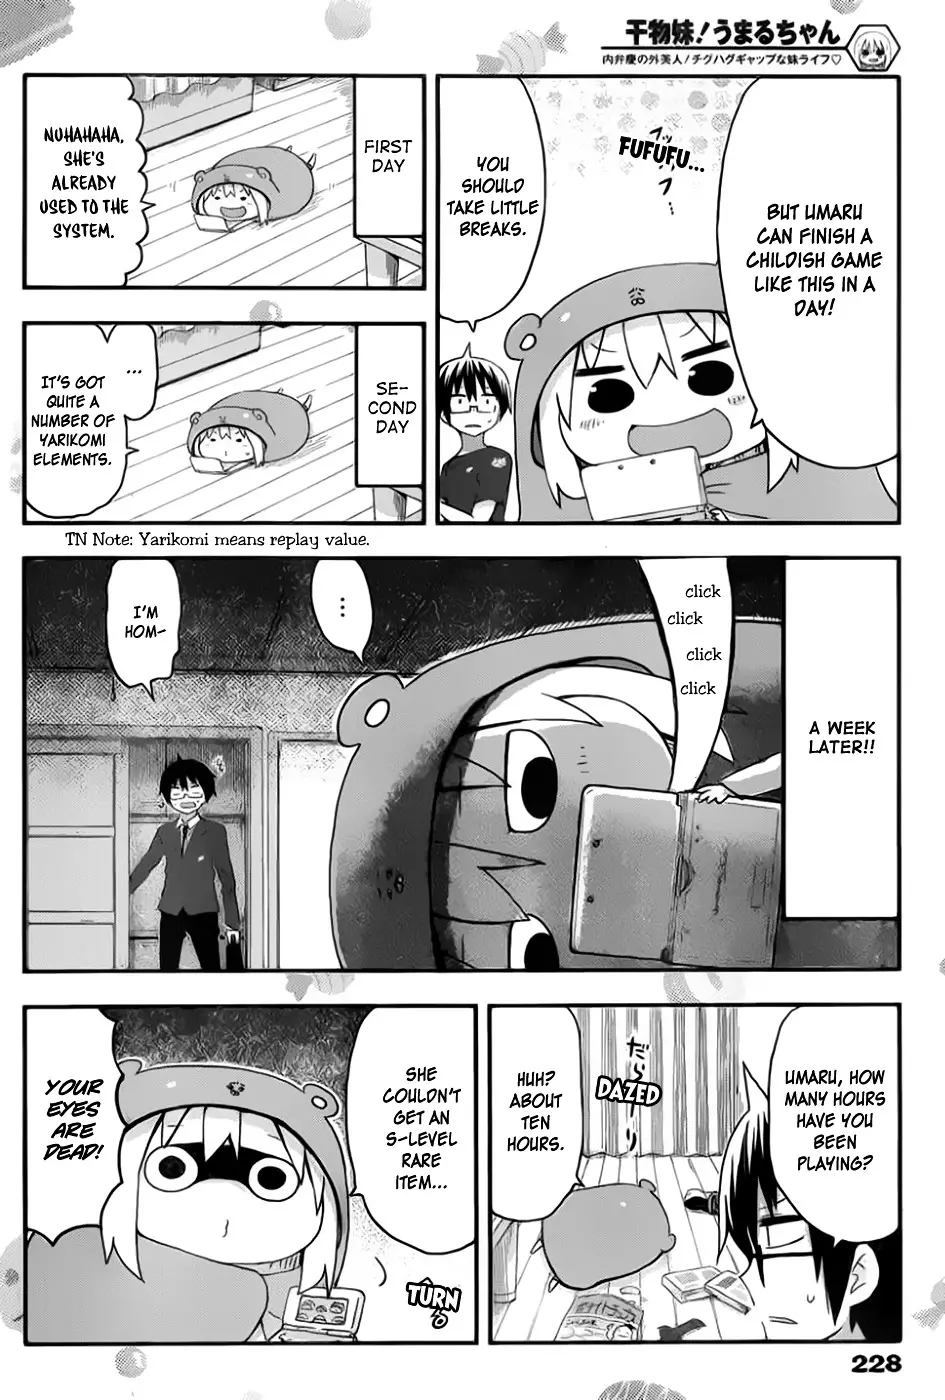 Himouto! Umaru-Chan - 72 page 2